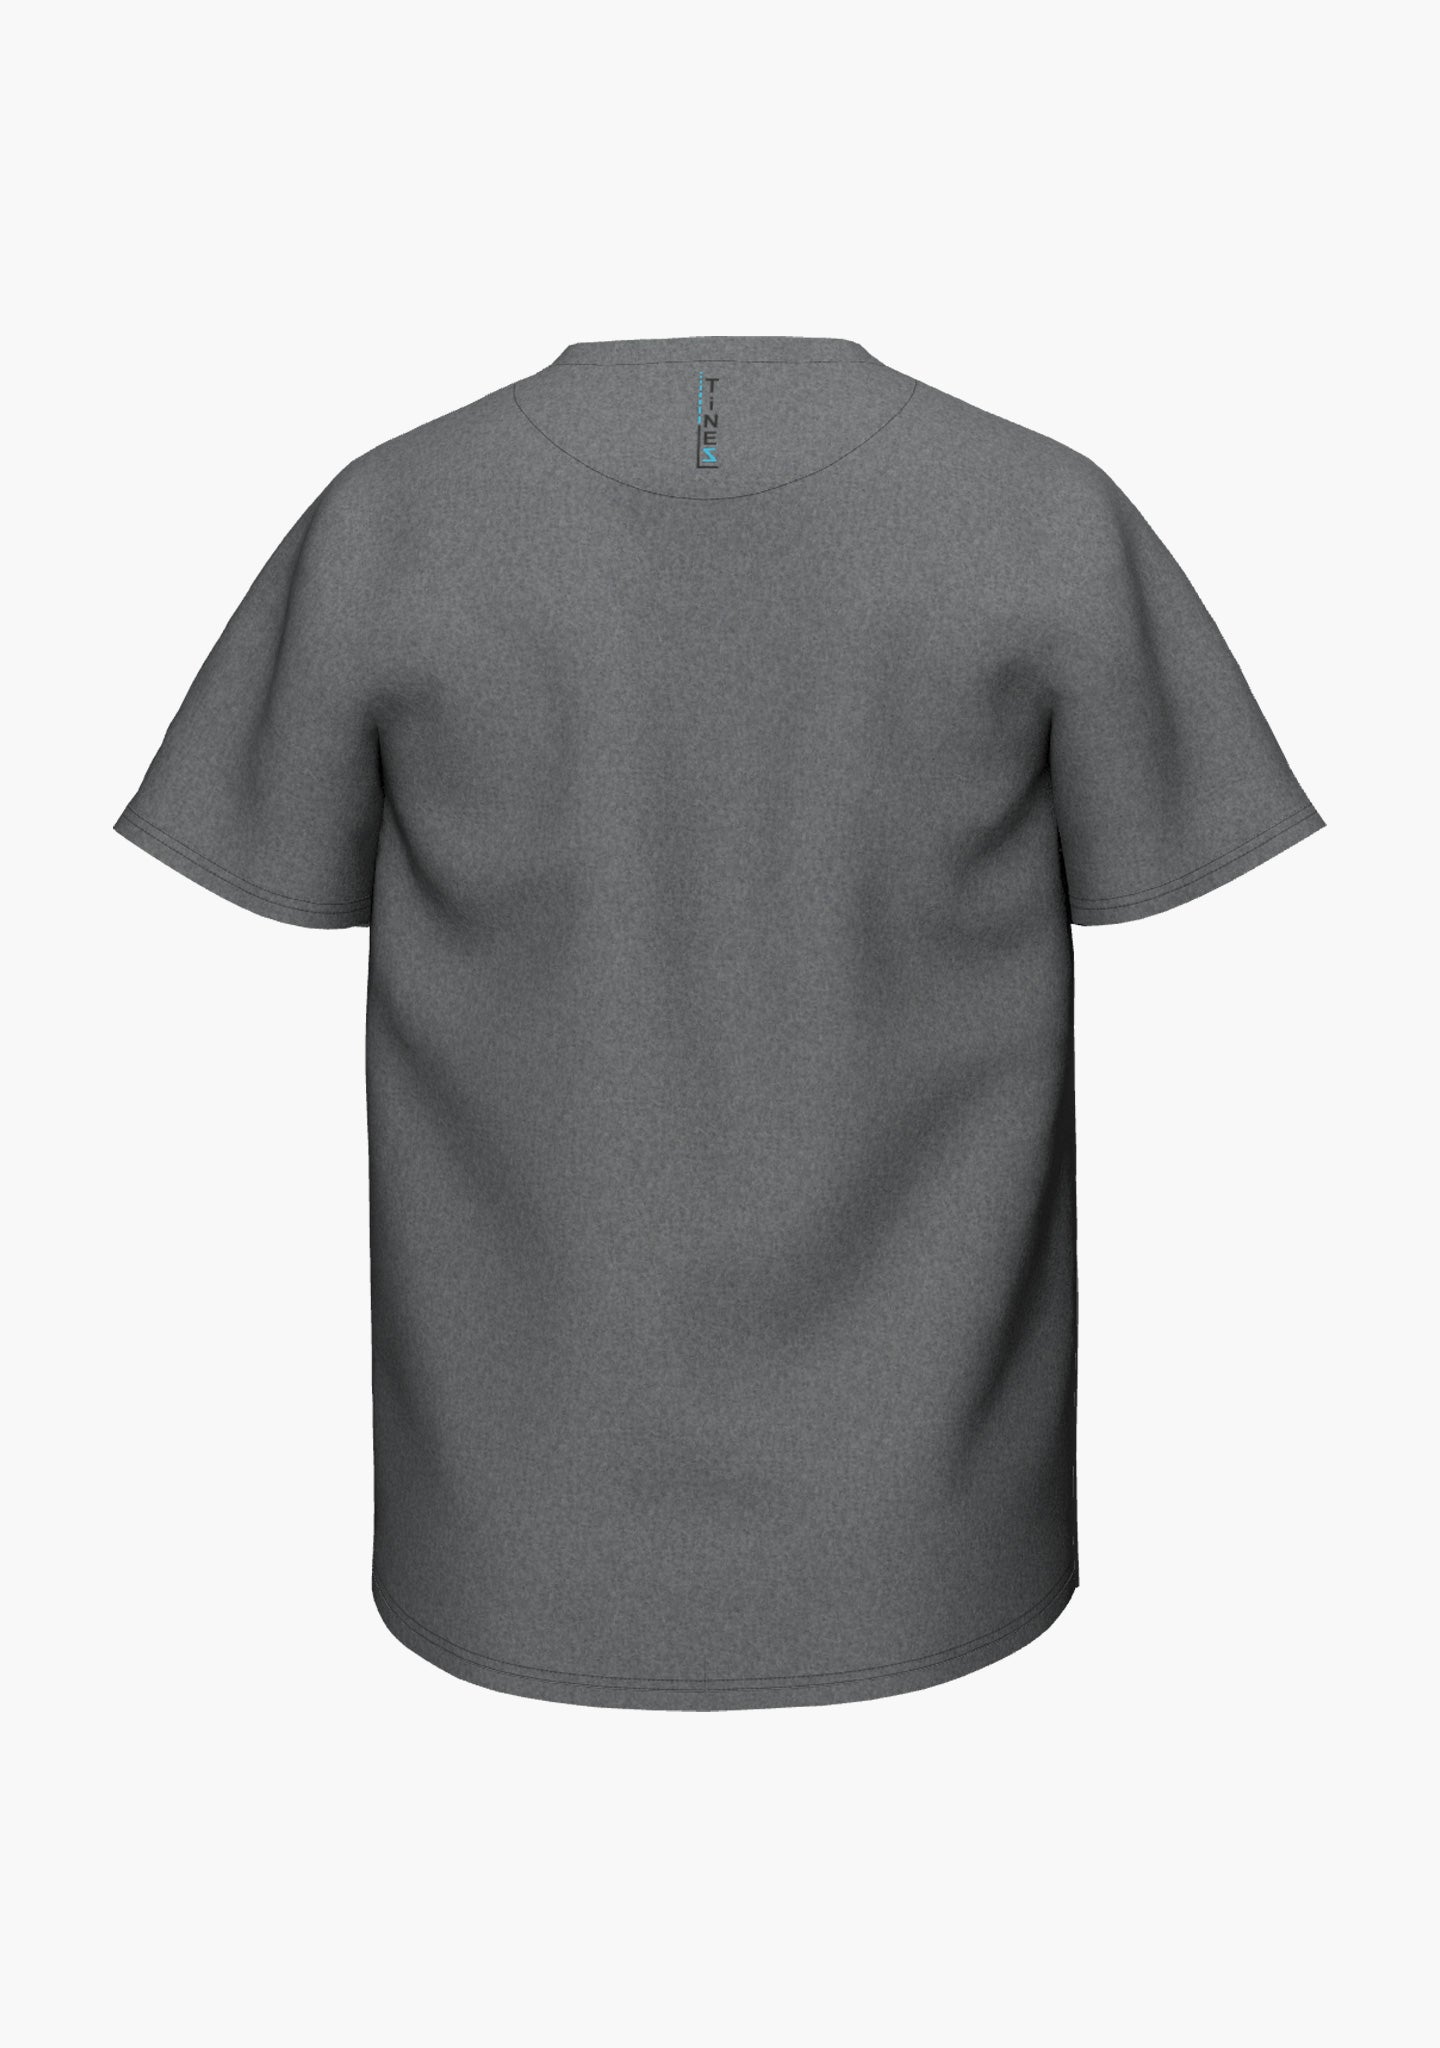 Leichtes, funktionales T-Shirt in anthrazit und light grey mit kleiner Brusttasche und einem Logoprint im Nacken (Ansicht hinten)